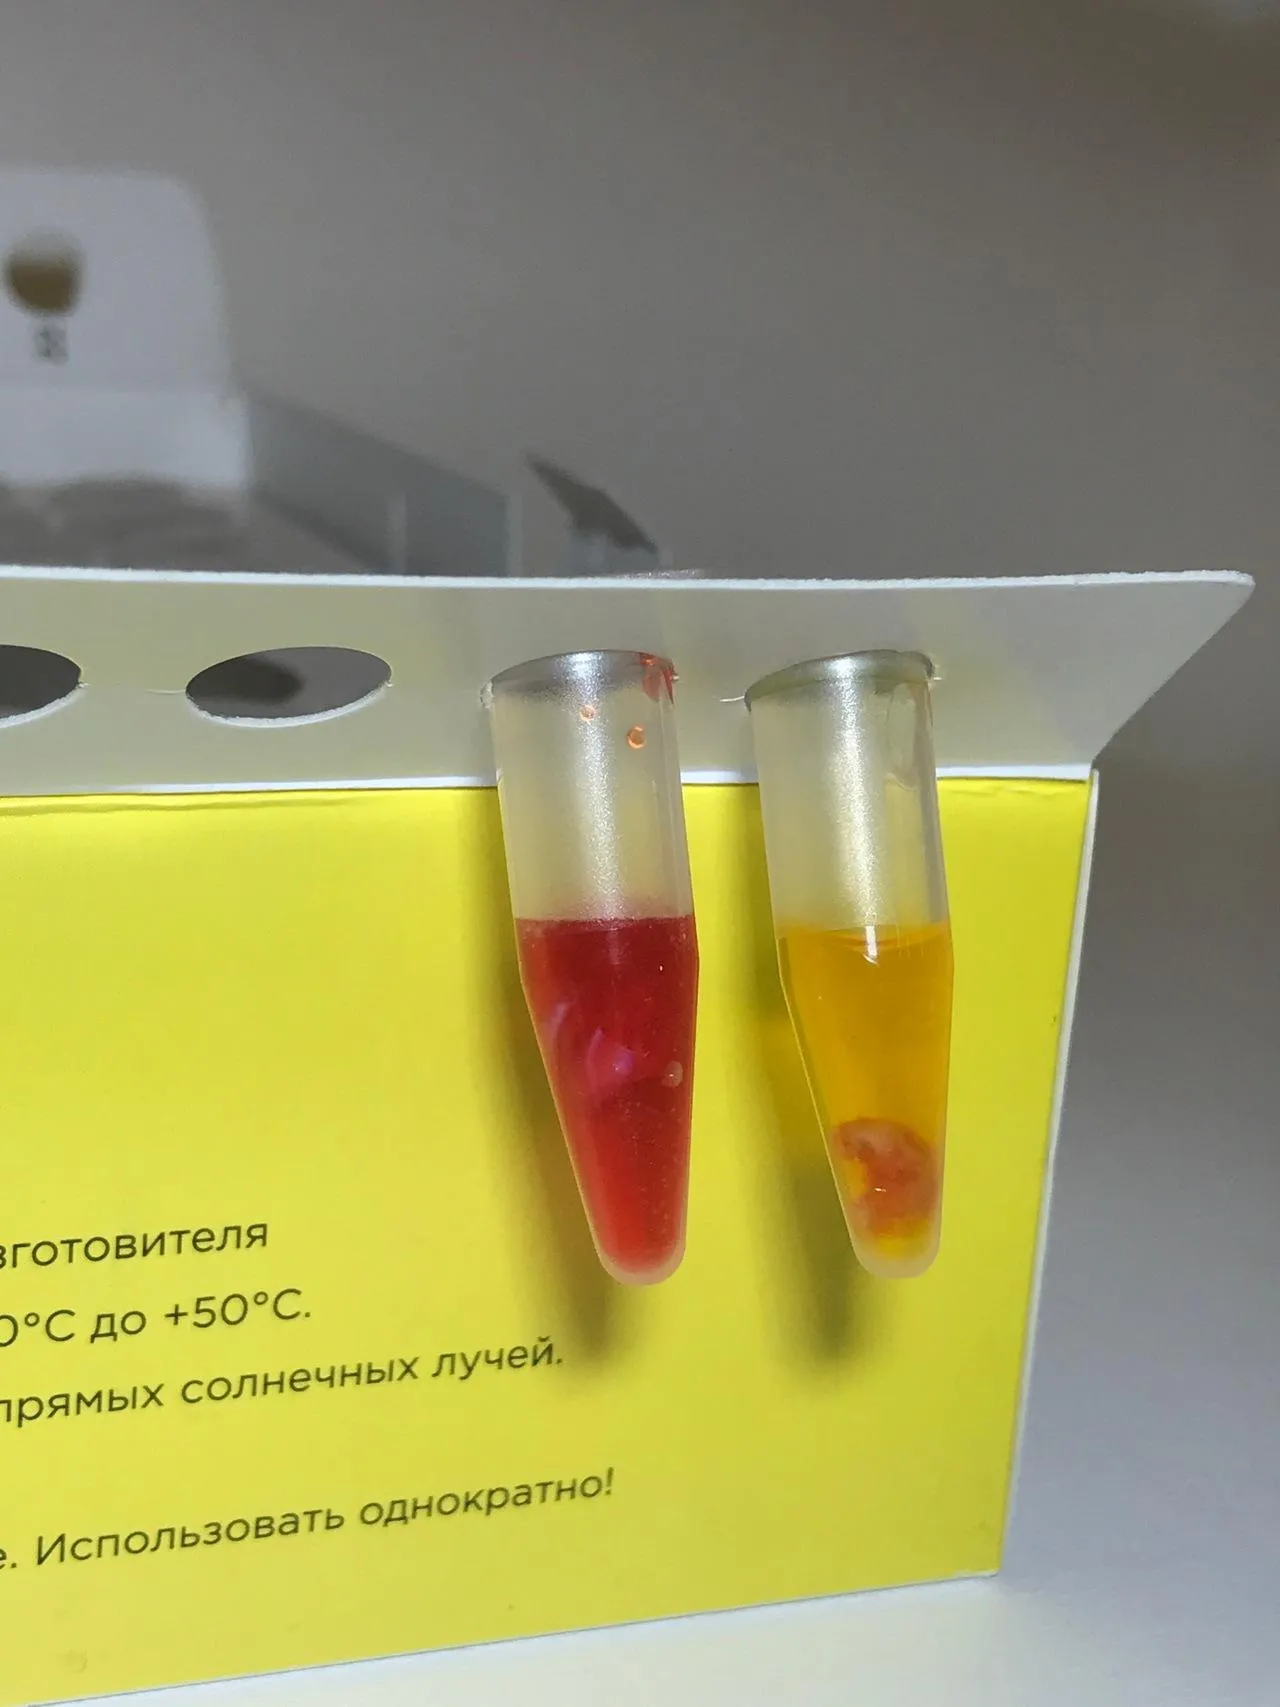 Набор реагентов для клинической лабораторной диагностики Helicobacter pylori «RU-Test Helicobacter pylori» (ТУ 21.20.23-001-16185645-2018)